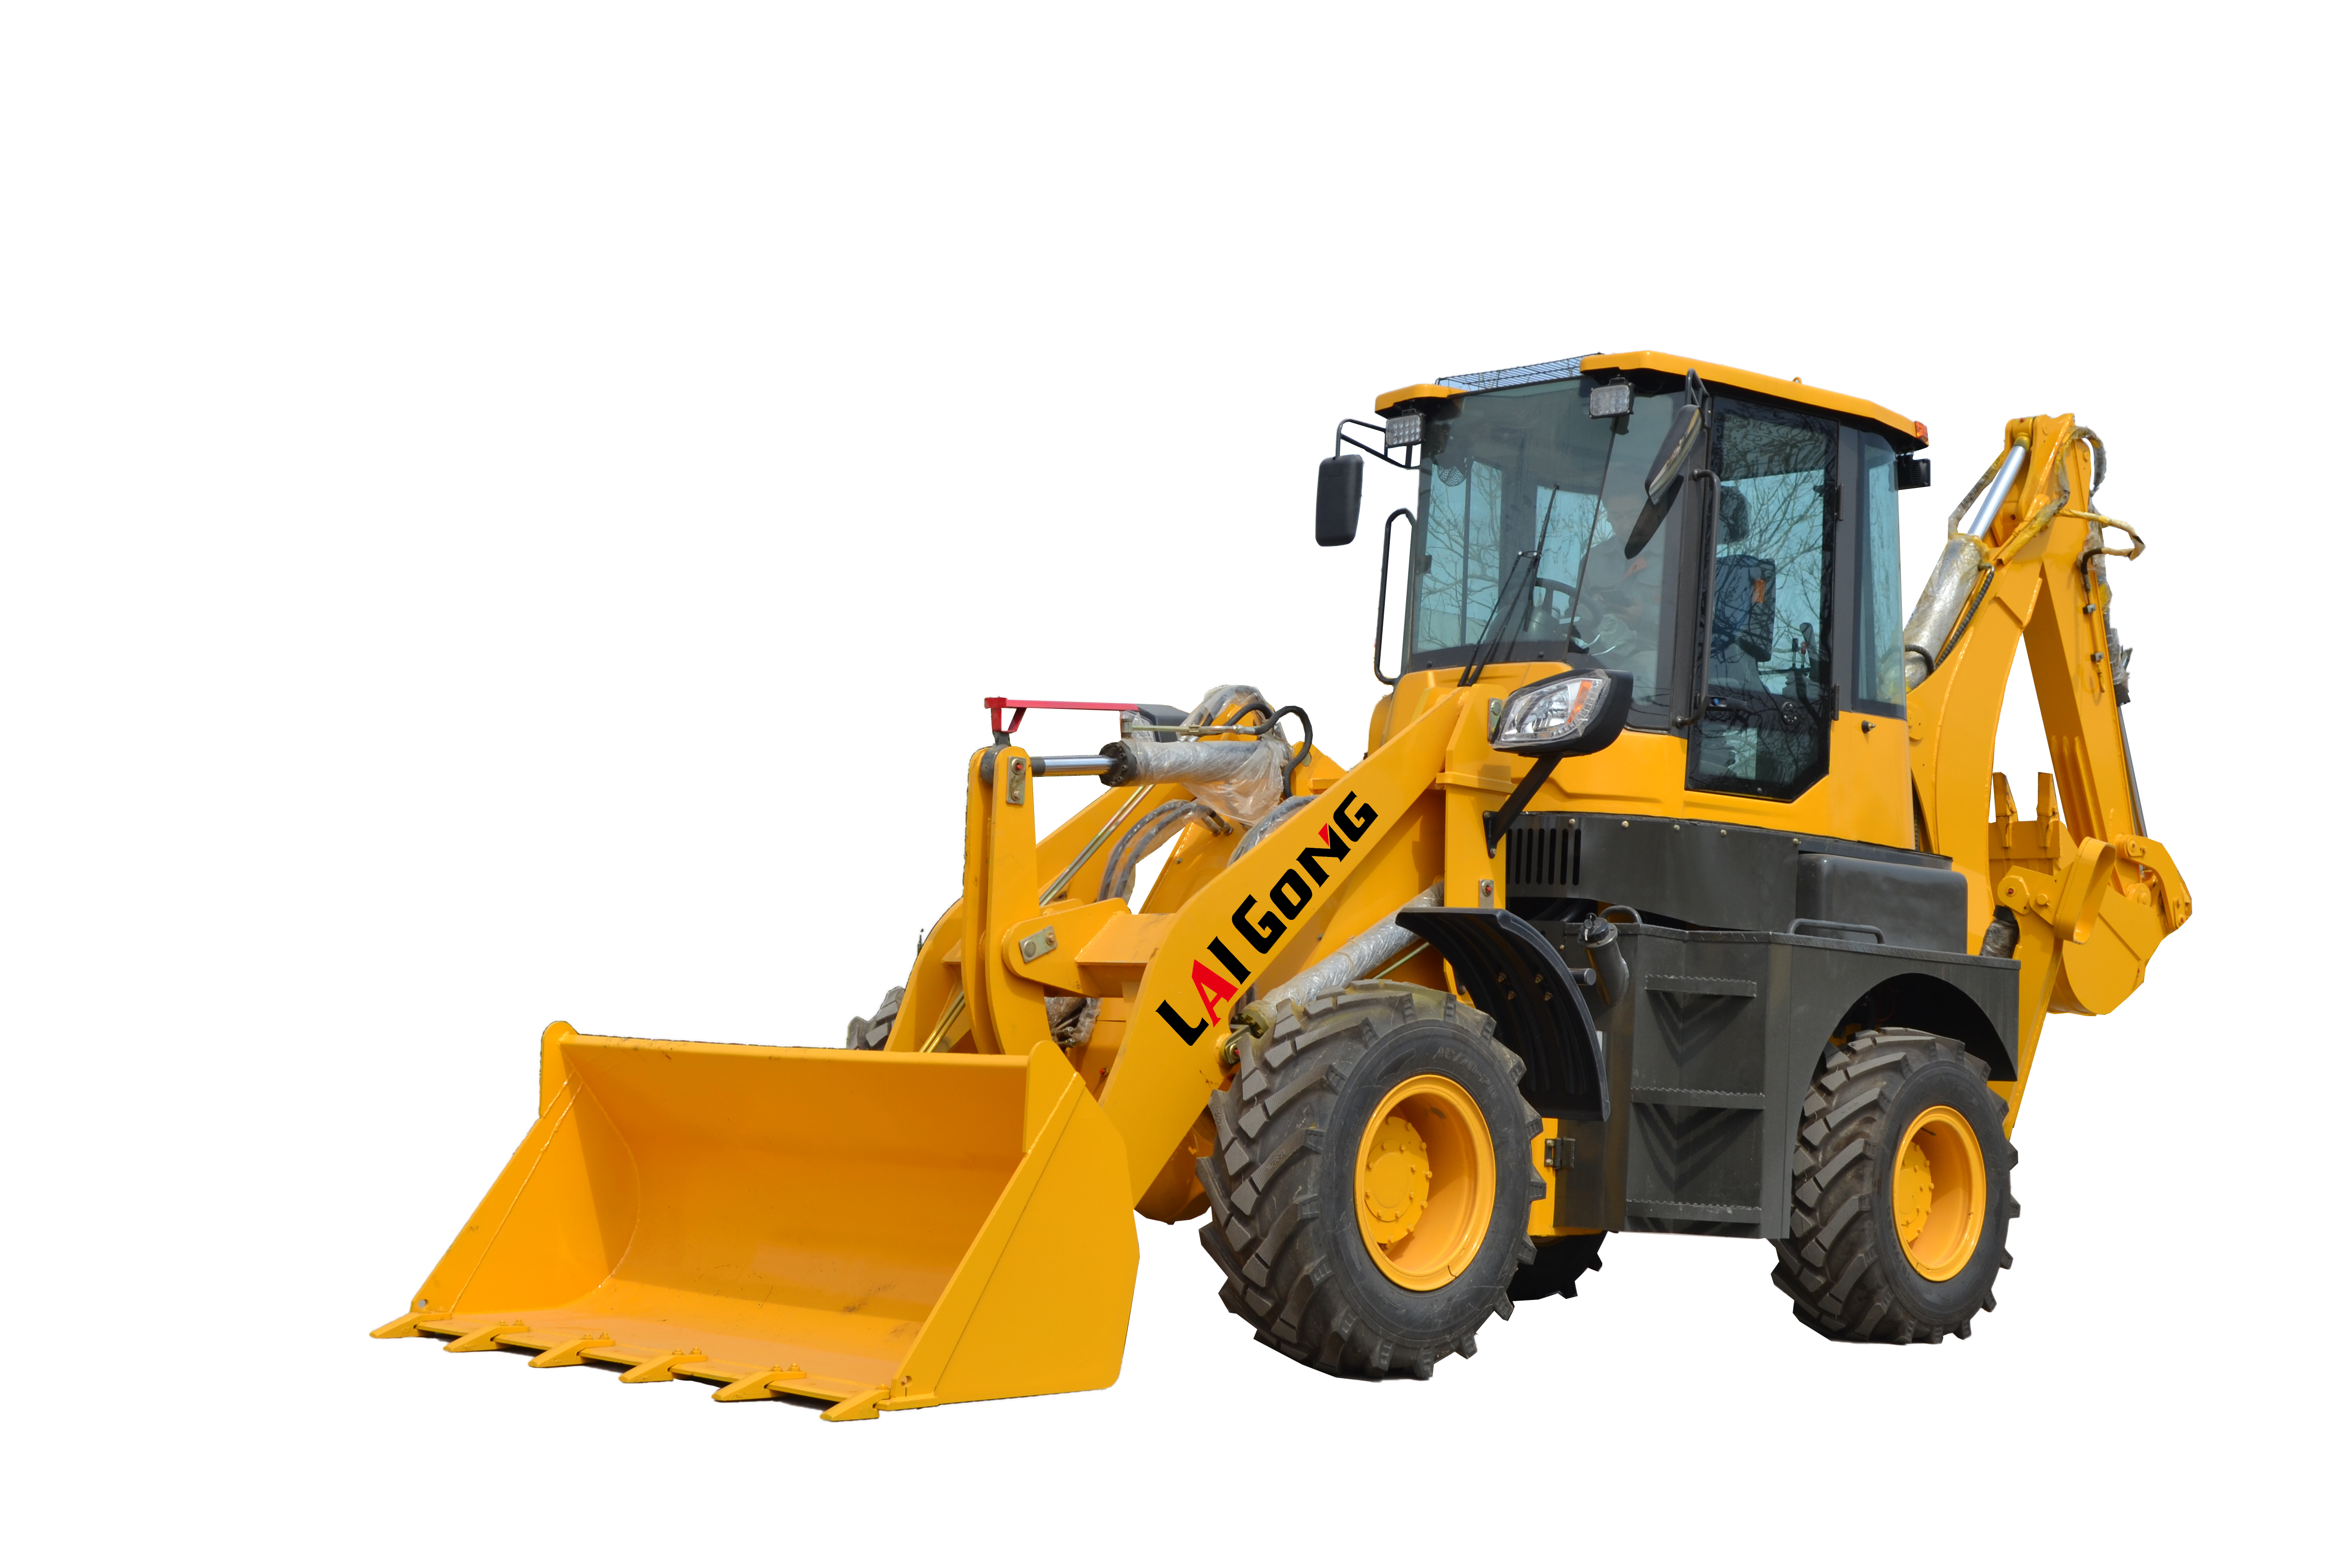 4 wheel drive new backhoe and loader tractors, backhoe loader joystick 4x4 tractor backhoe for sale